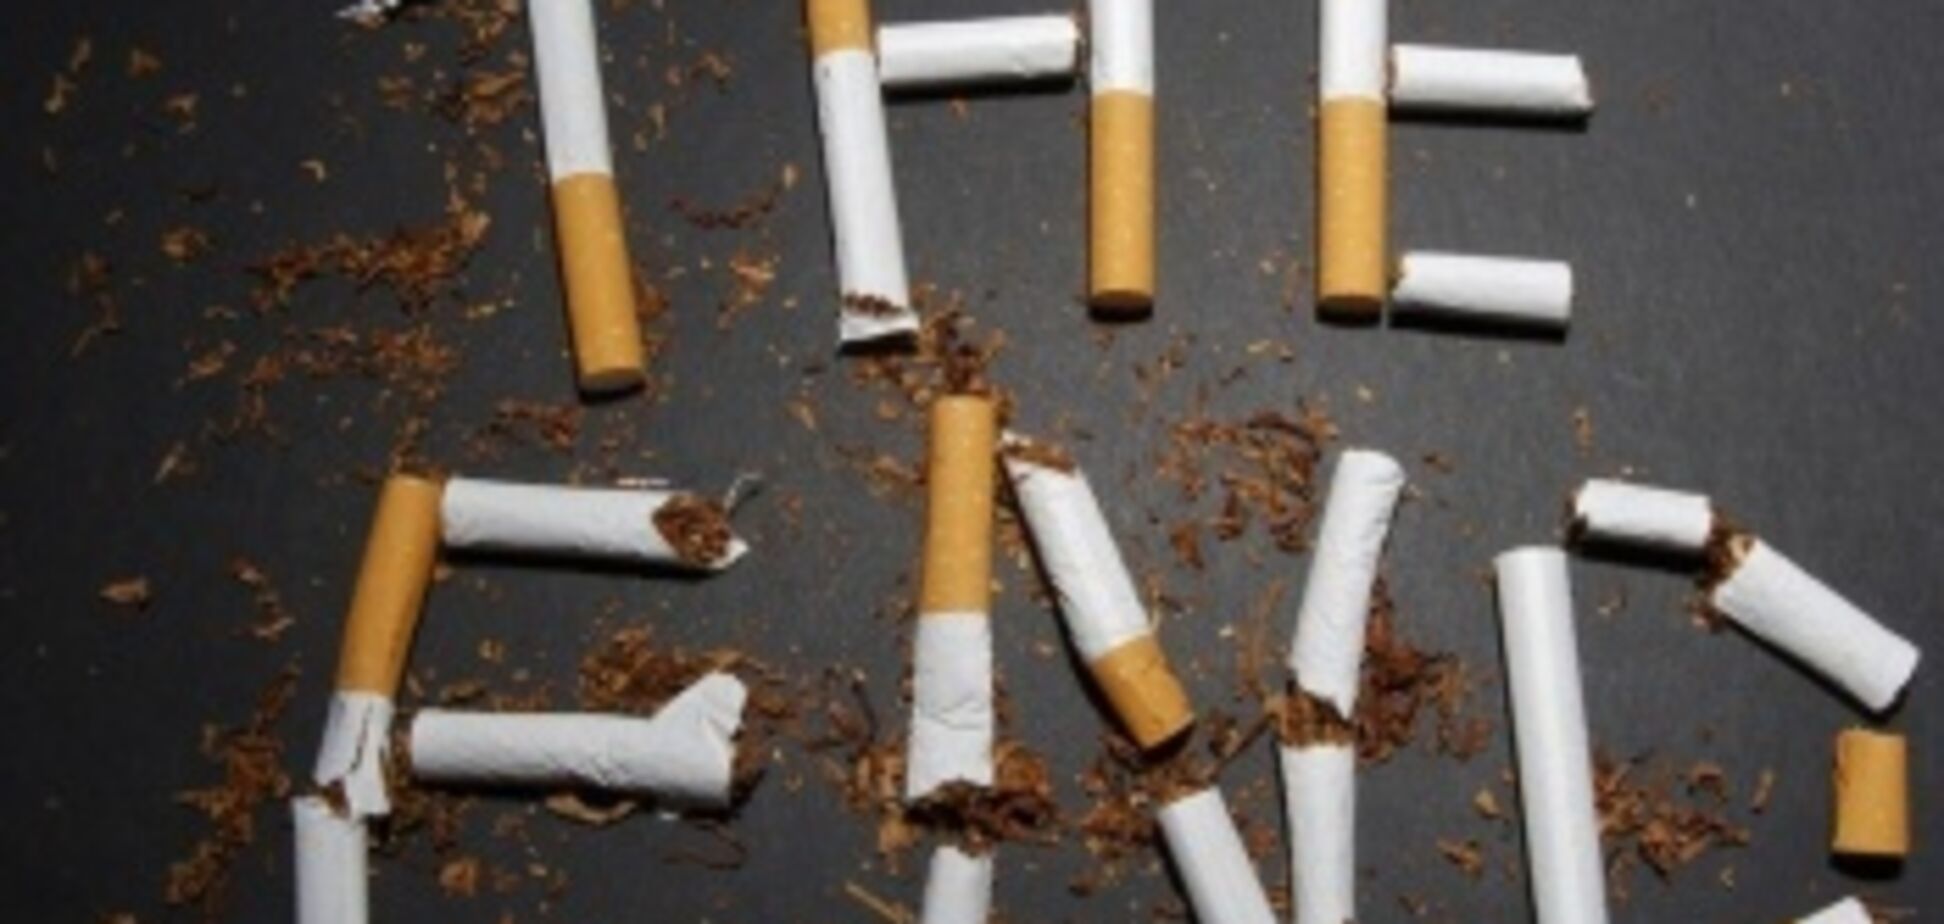 Сигарета или жизнь: каждый делает свой выбор